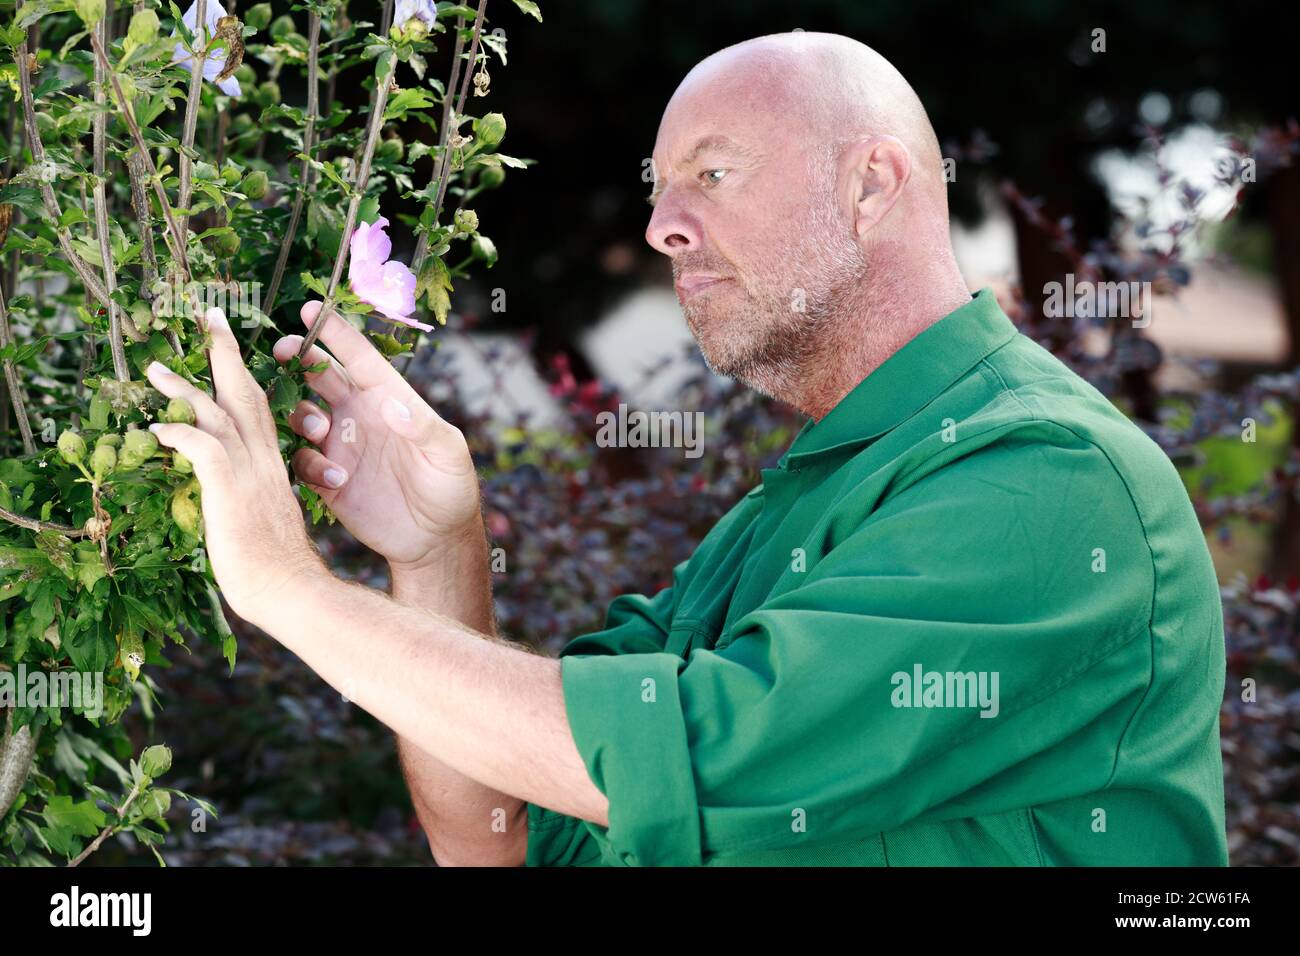 man gardener man arranging seedlings Stock Photo